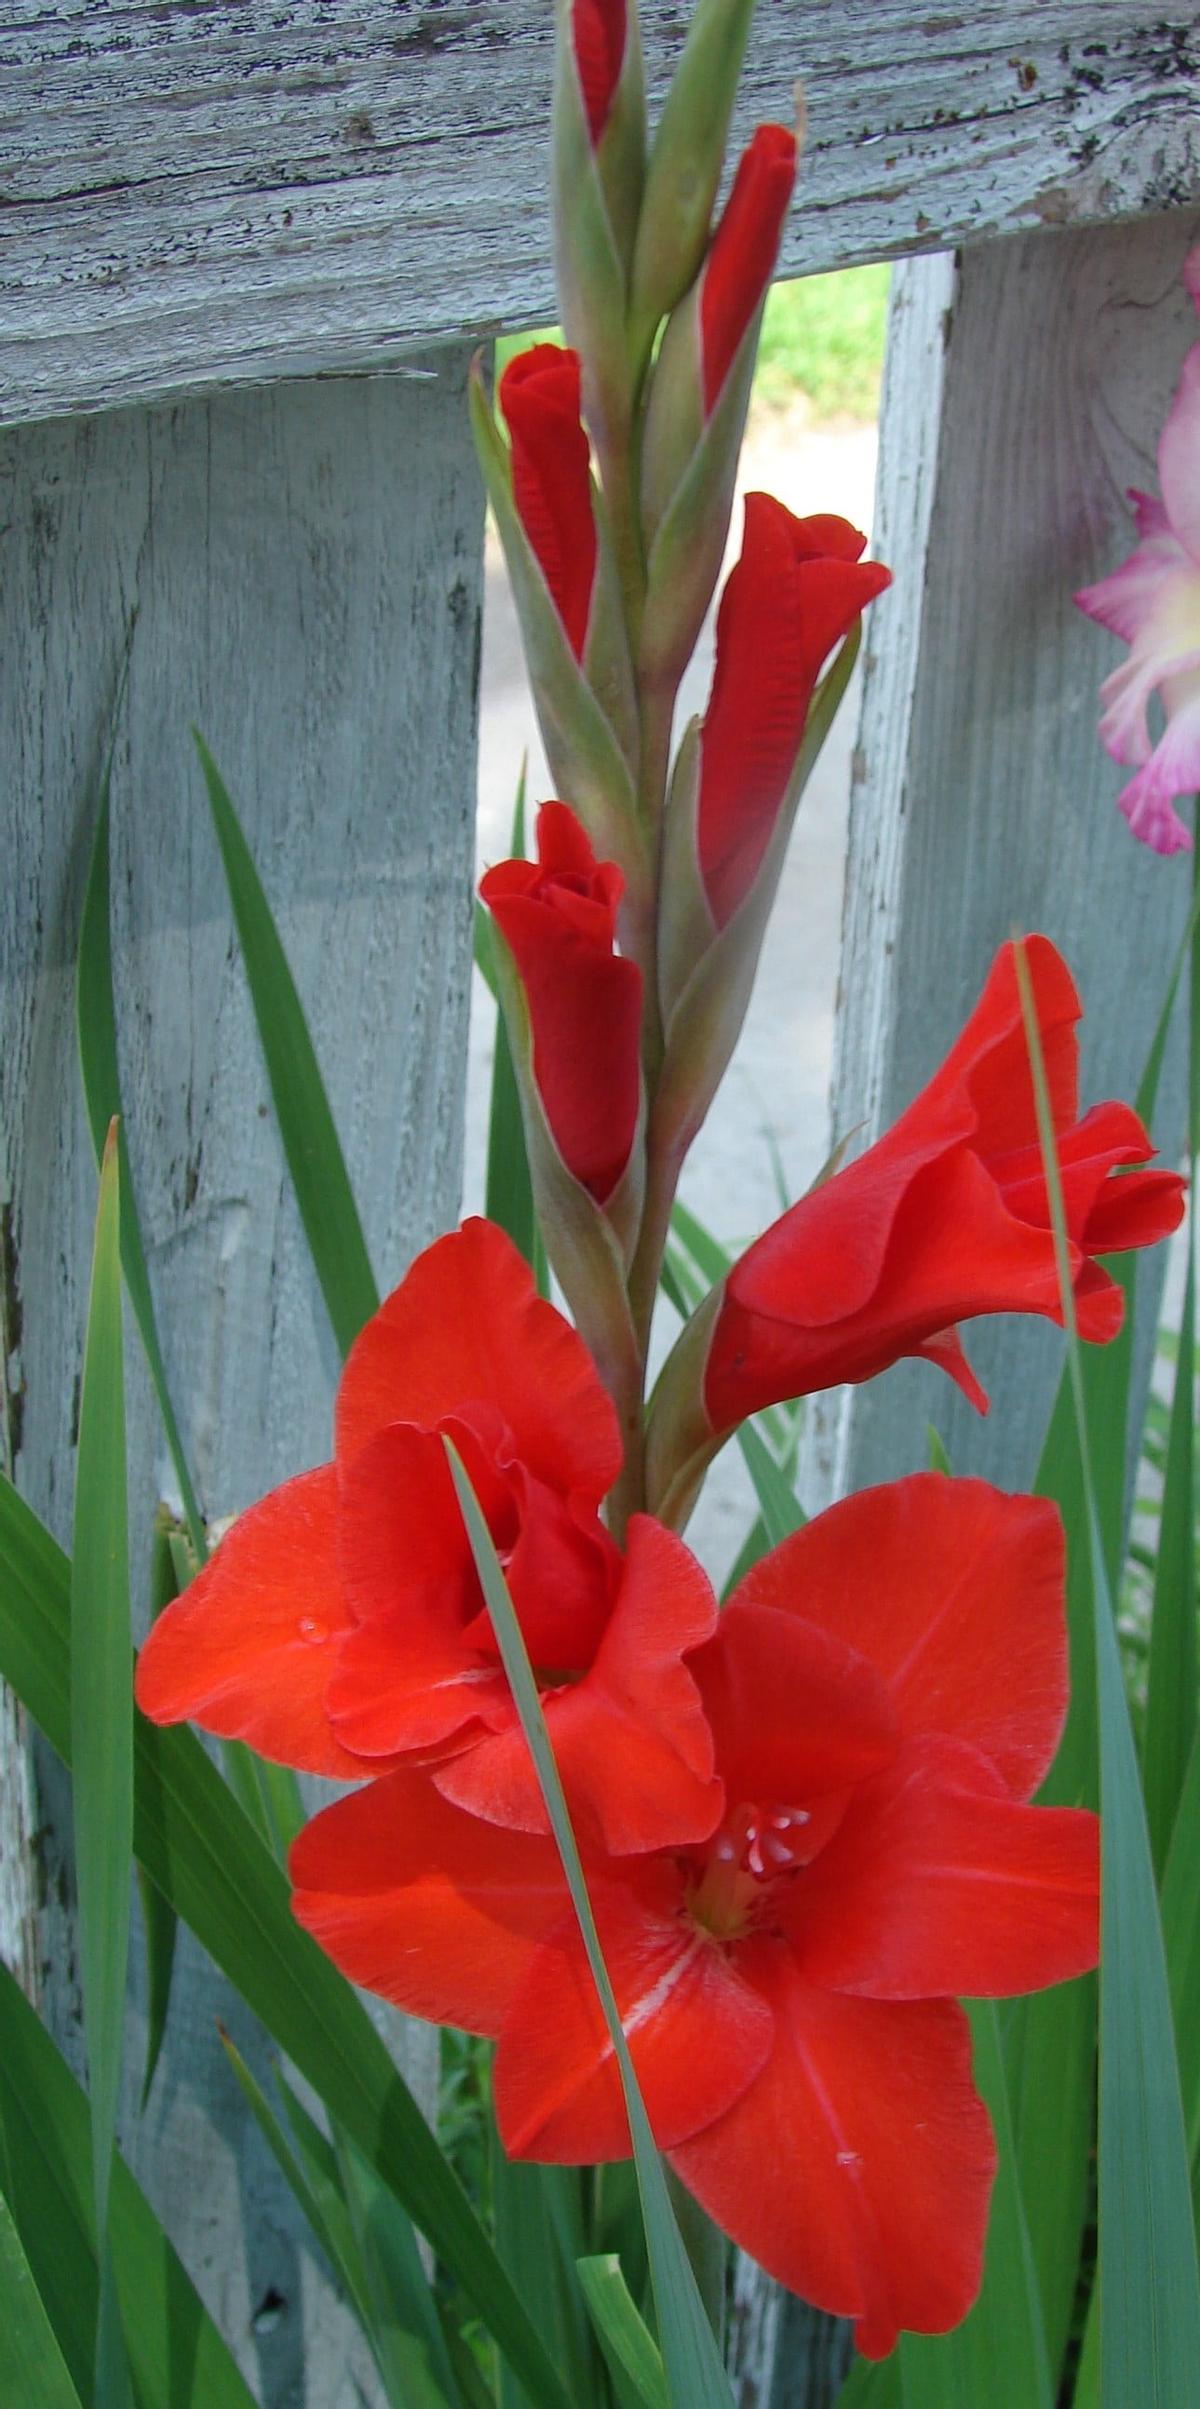 ¡Triunfa con gladiolos en maceta! Aprende cómo cuidar y cultivar estas flores victoriosas en la comodidad de tu hogar